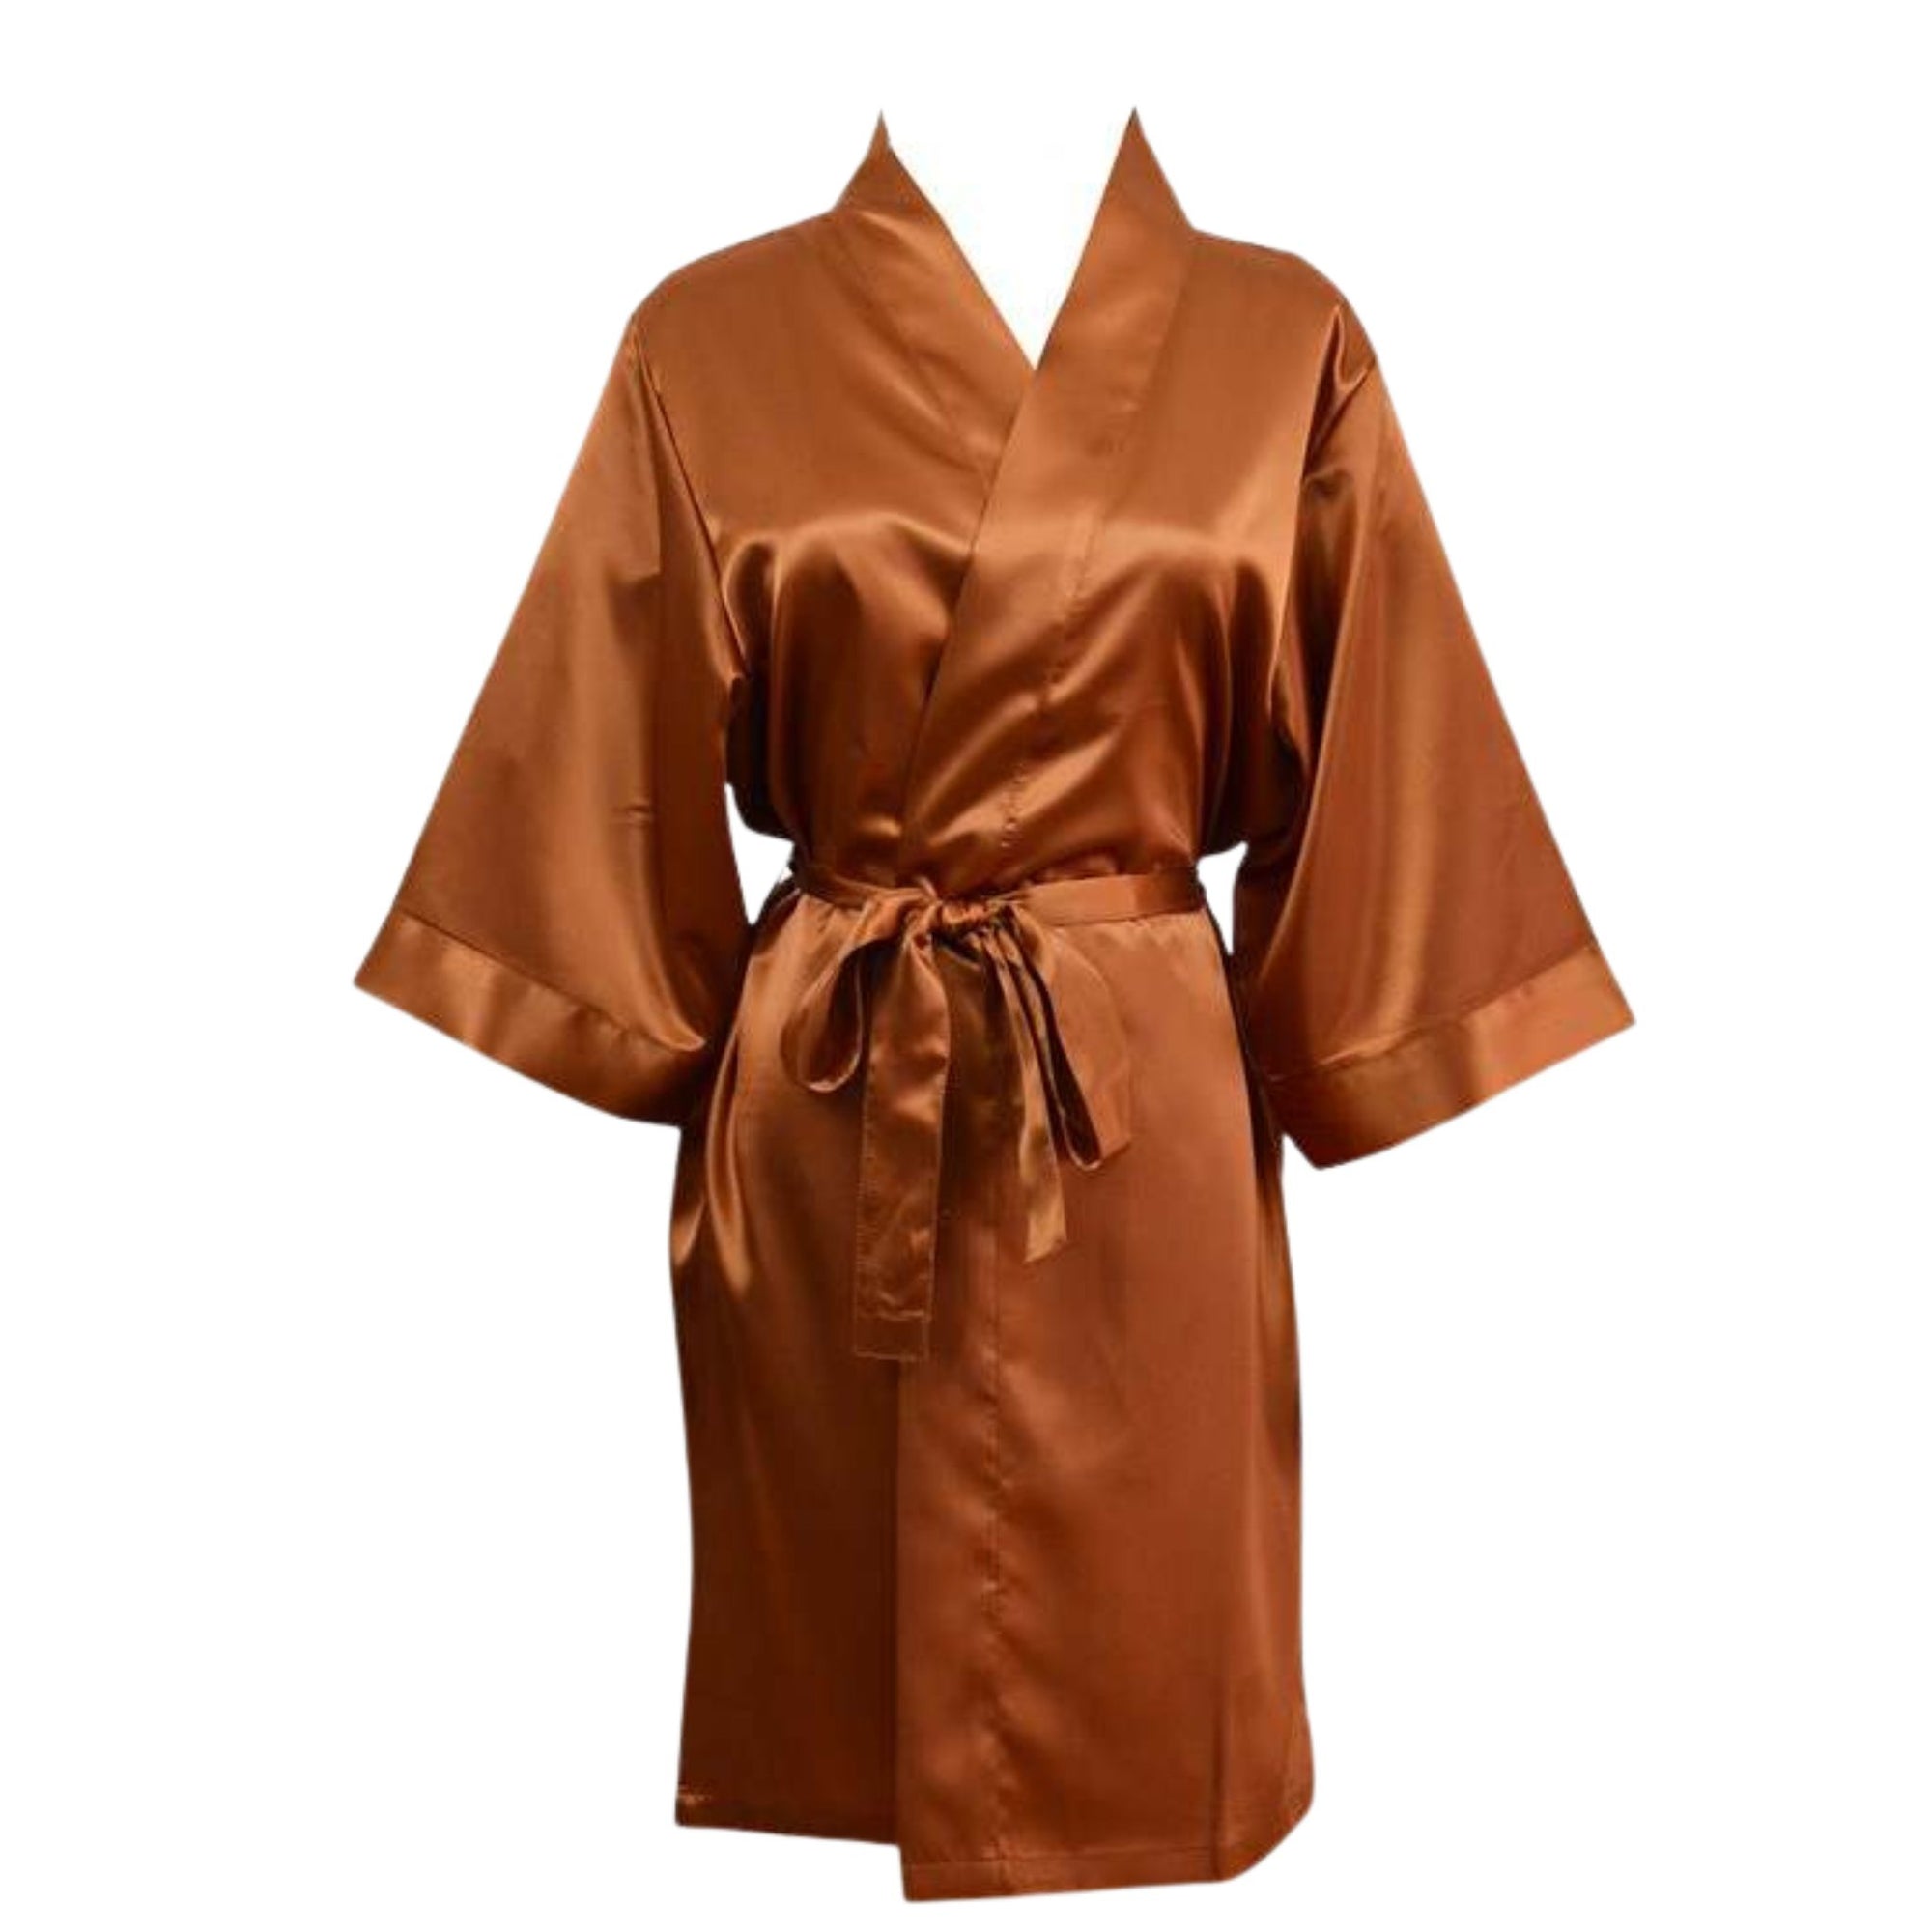 rust copper satin robe